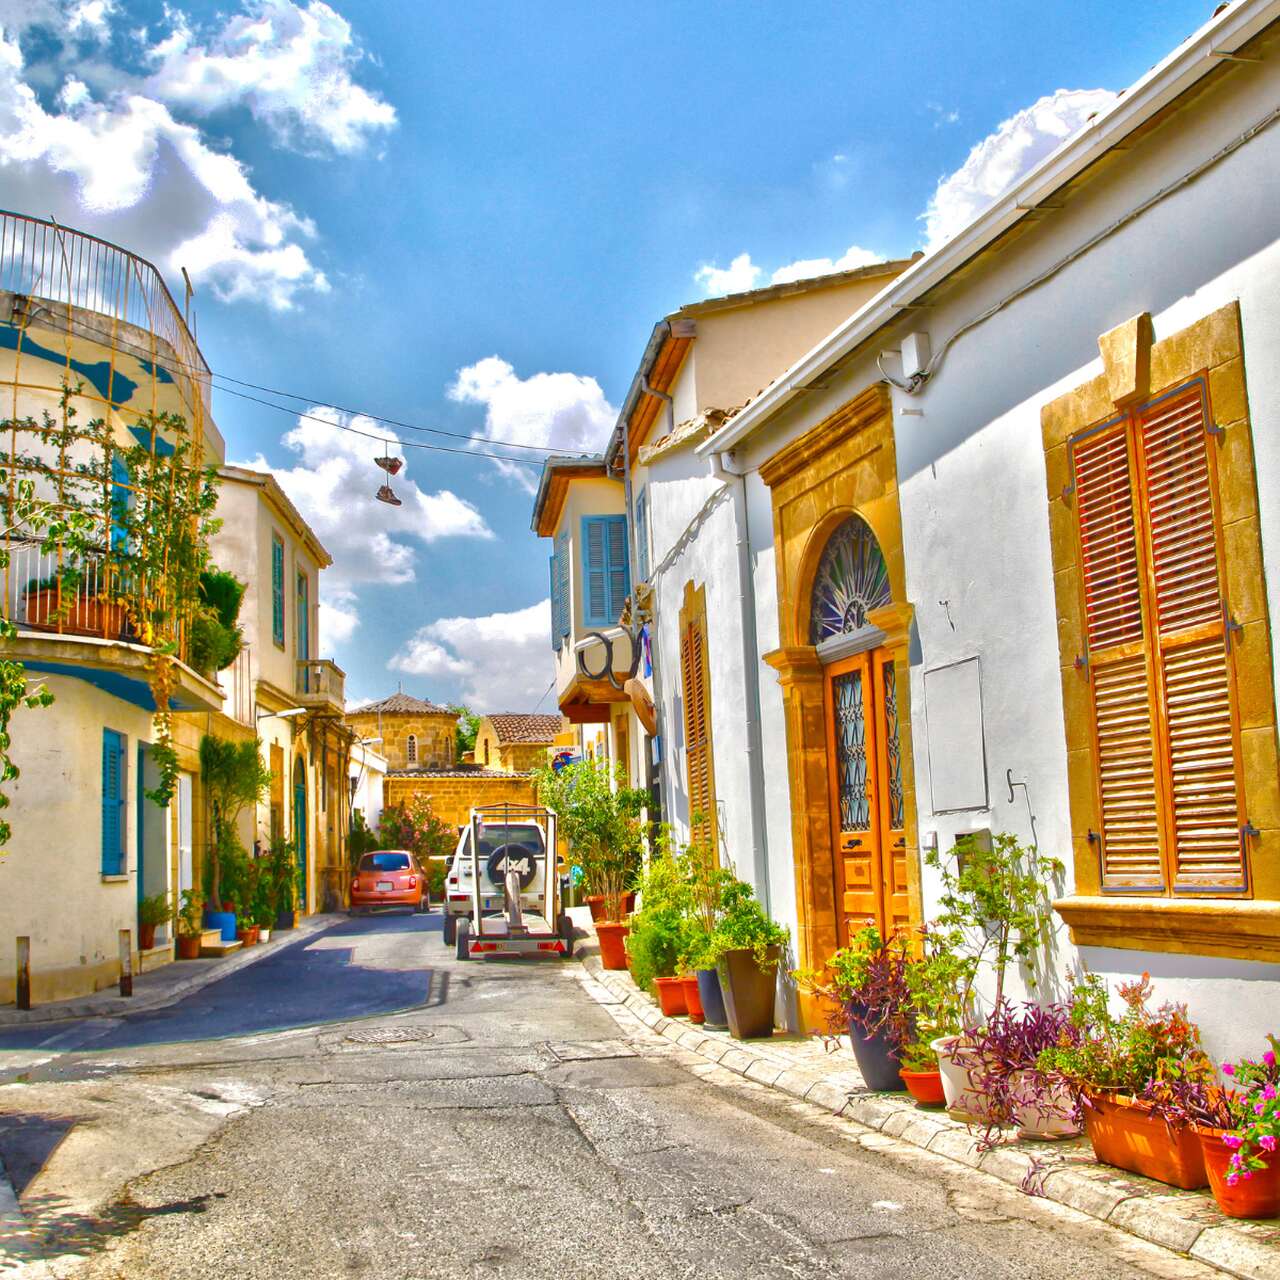 Stare miasto w Nikozji, Cypr Północny